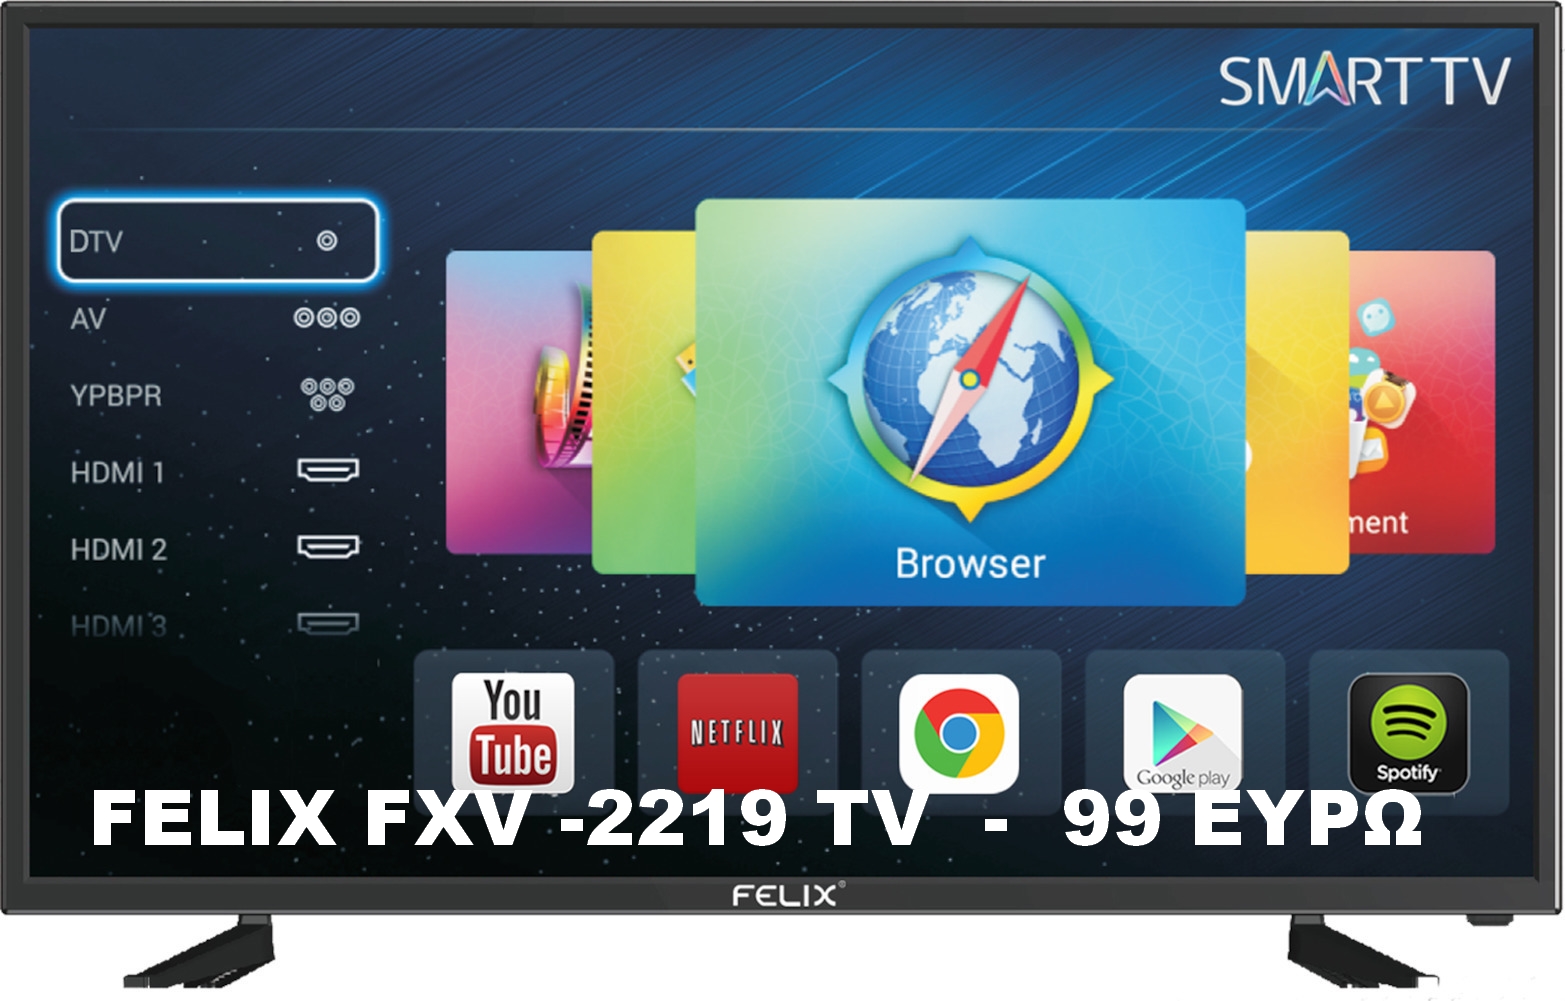 FELIX FXV 2219 TV